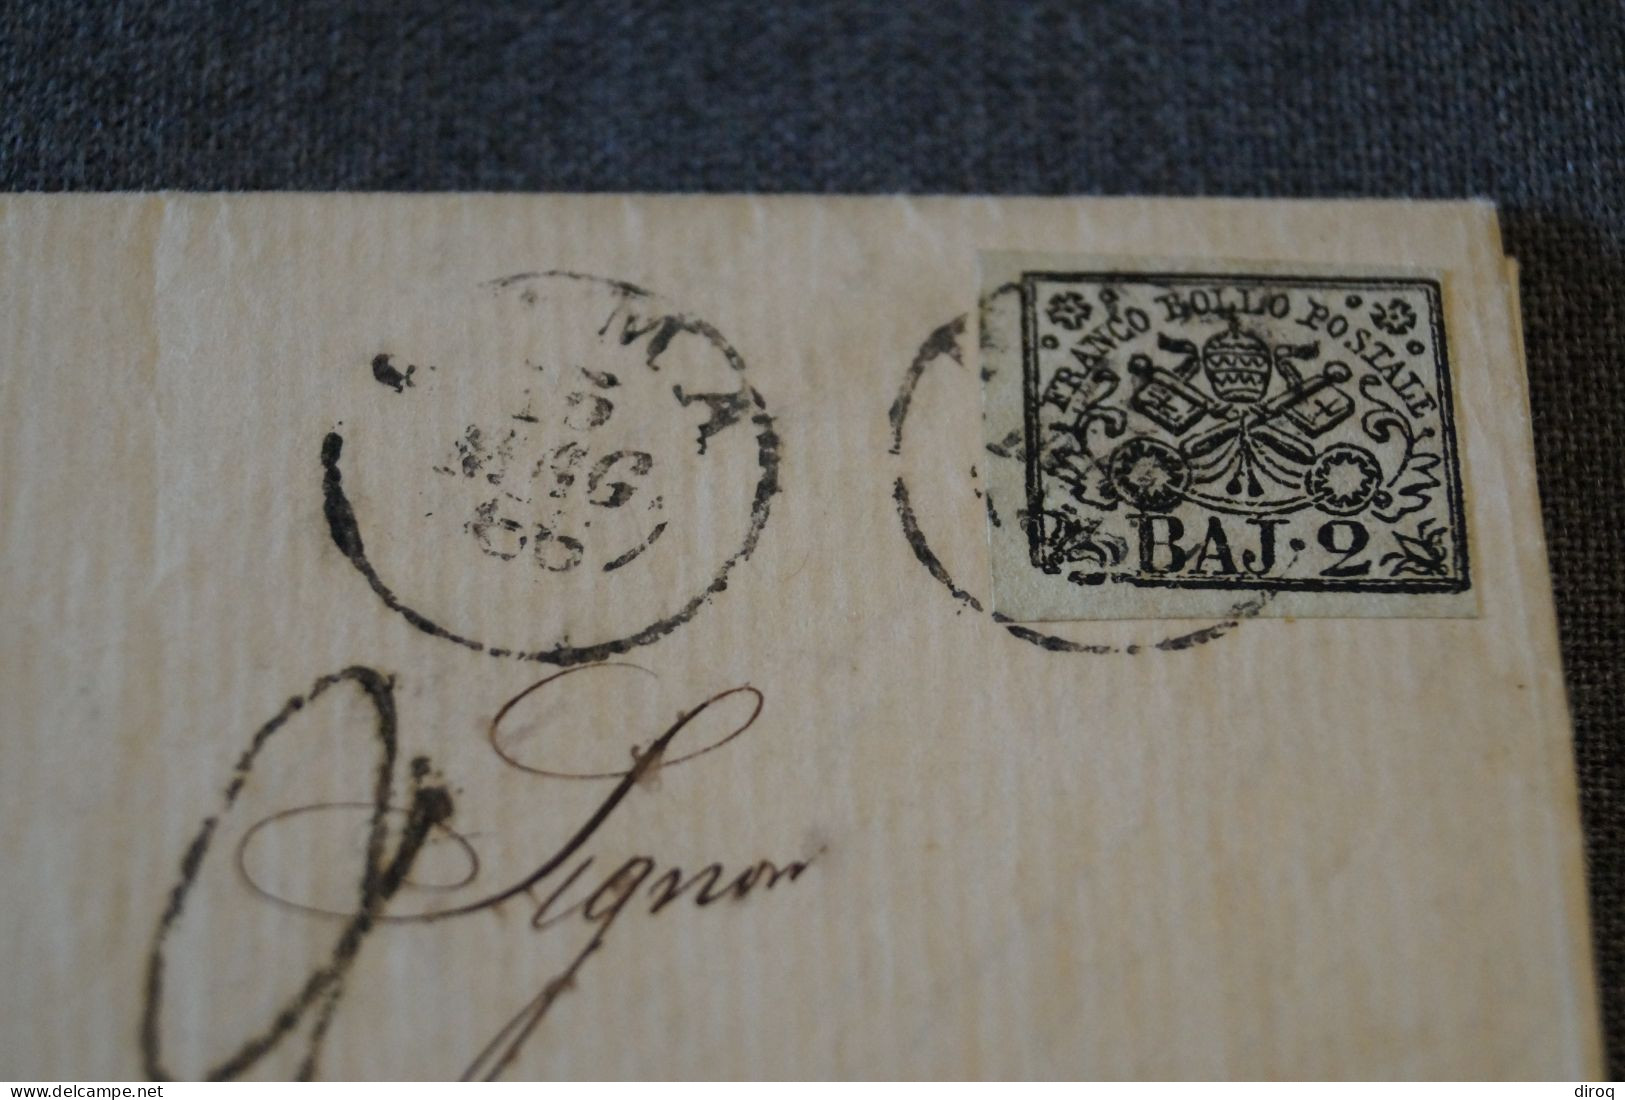 Ancien Envoi Franco Bollo Postale BAJ-2, Italia 1866,courrier à Identifier,pour Collection - Papal States